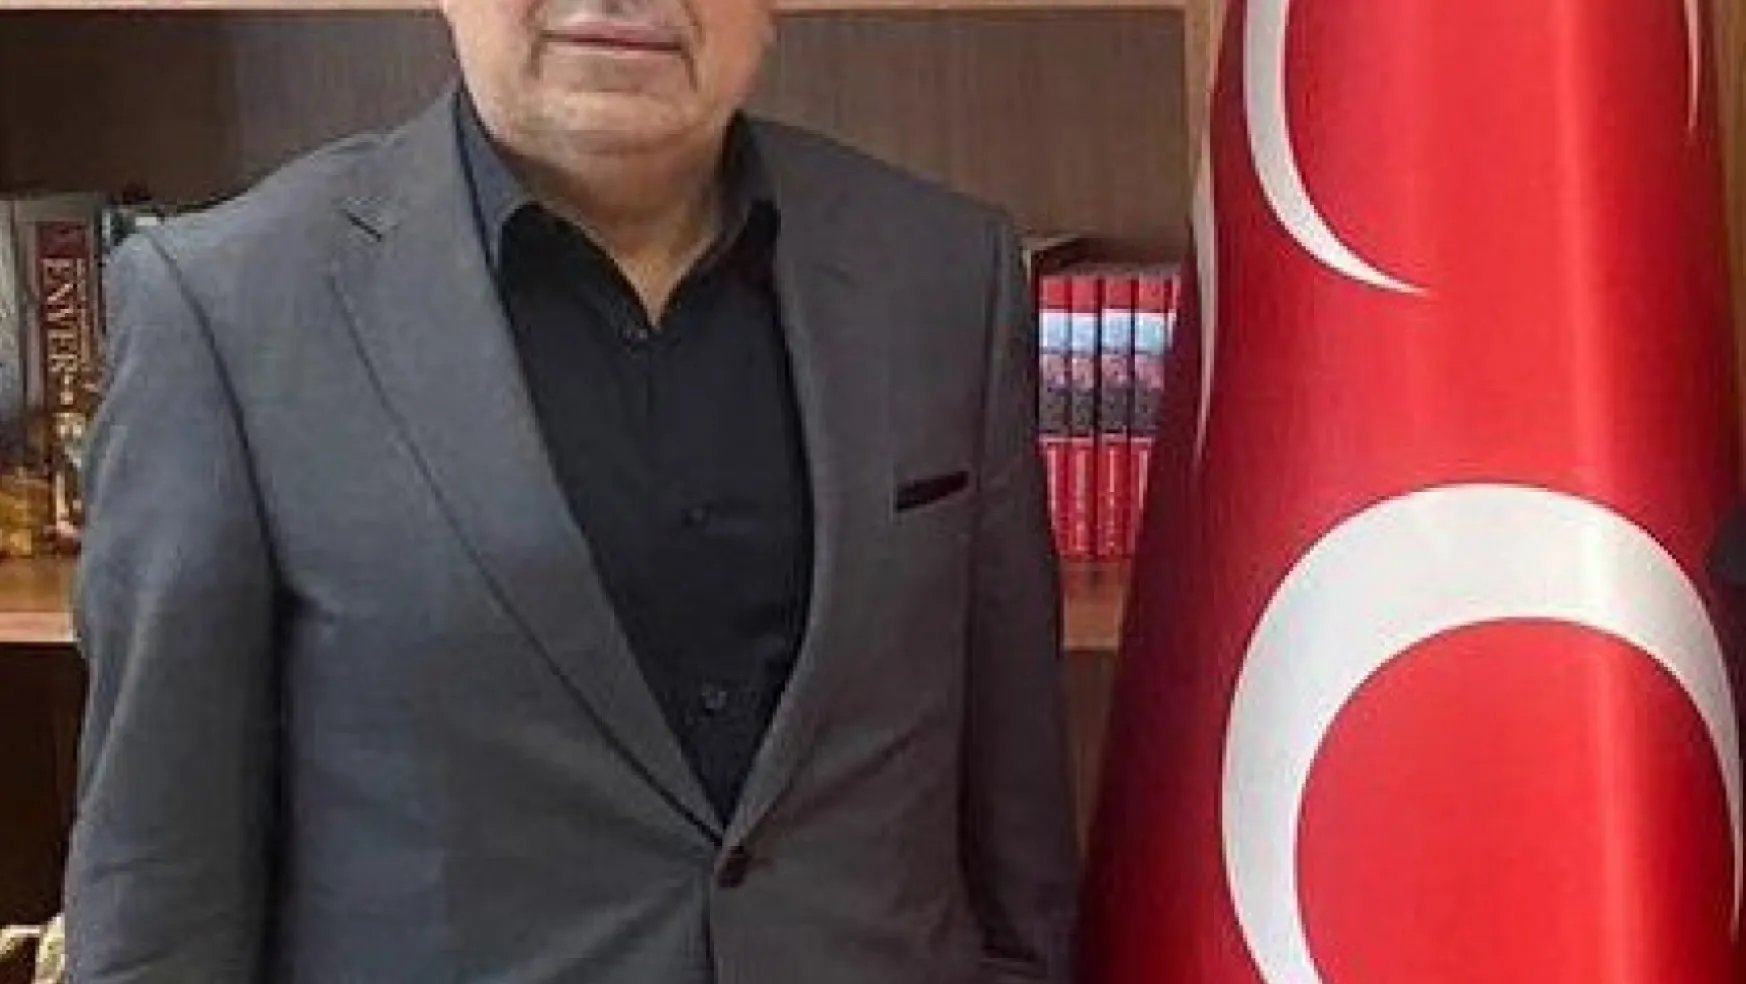 Menduh Uzunluoğlu: 'İftiralar atmayı tercih eden CHP yönetimini üzülerek takip ediyorum'